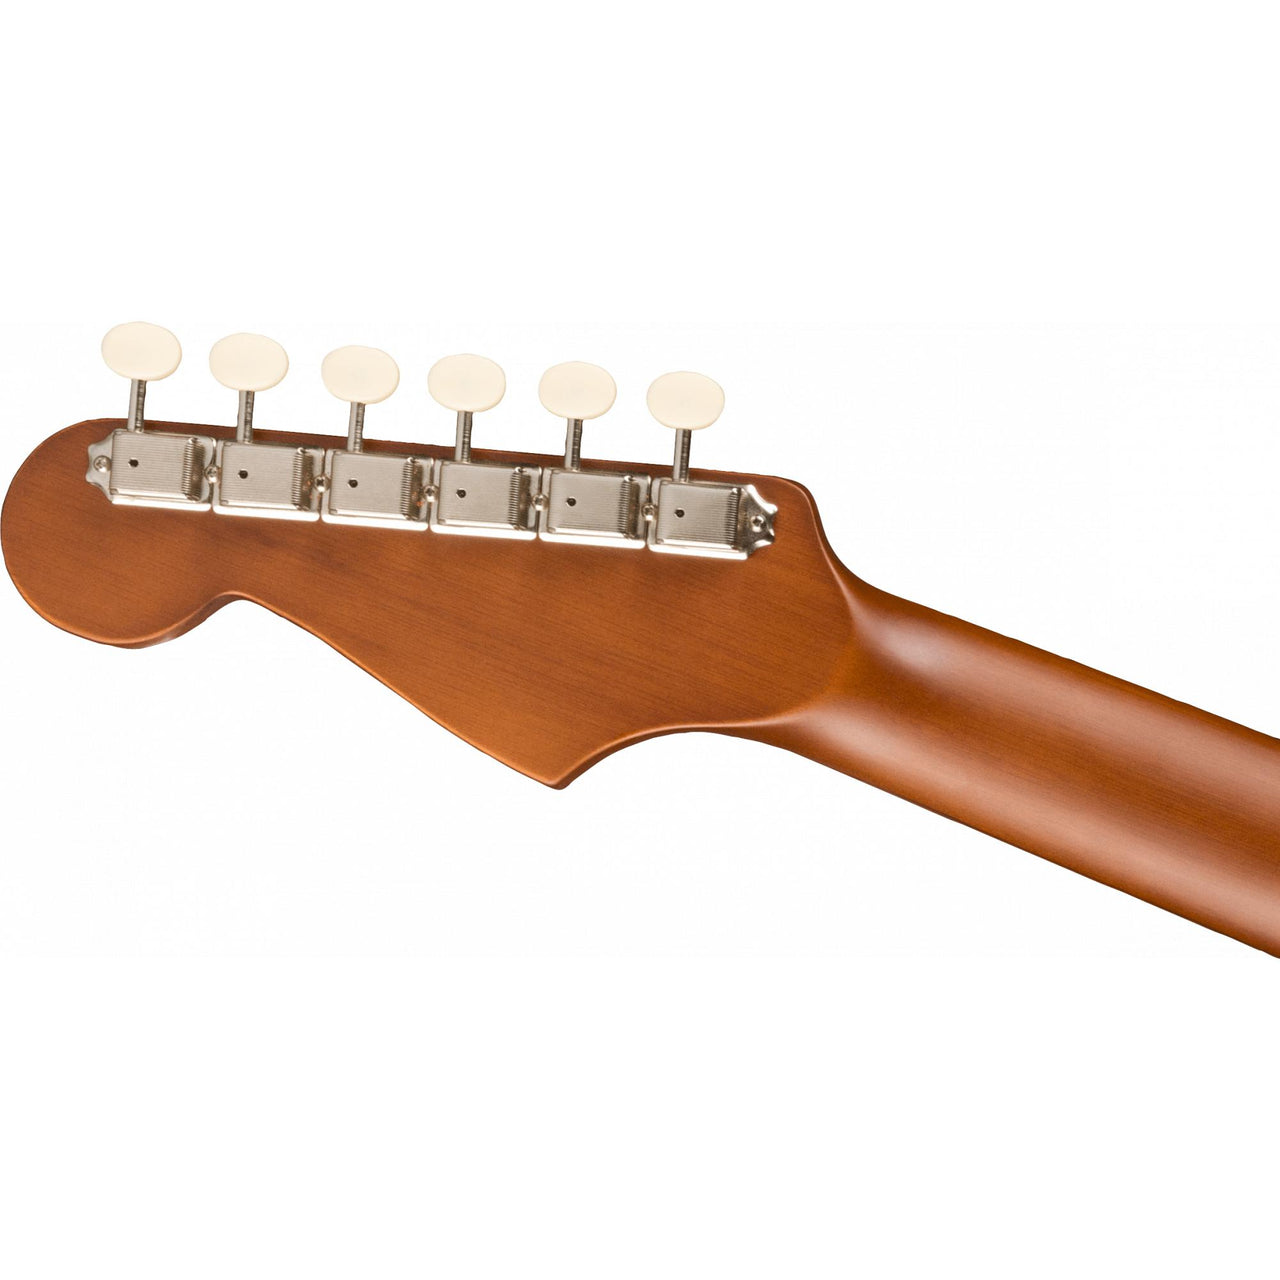 Guitarra Acustica Fender Redondo Mini Sunburst 0970710103